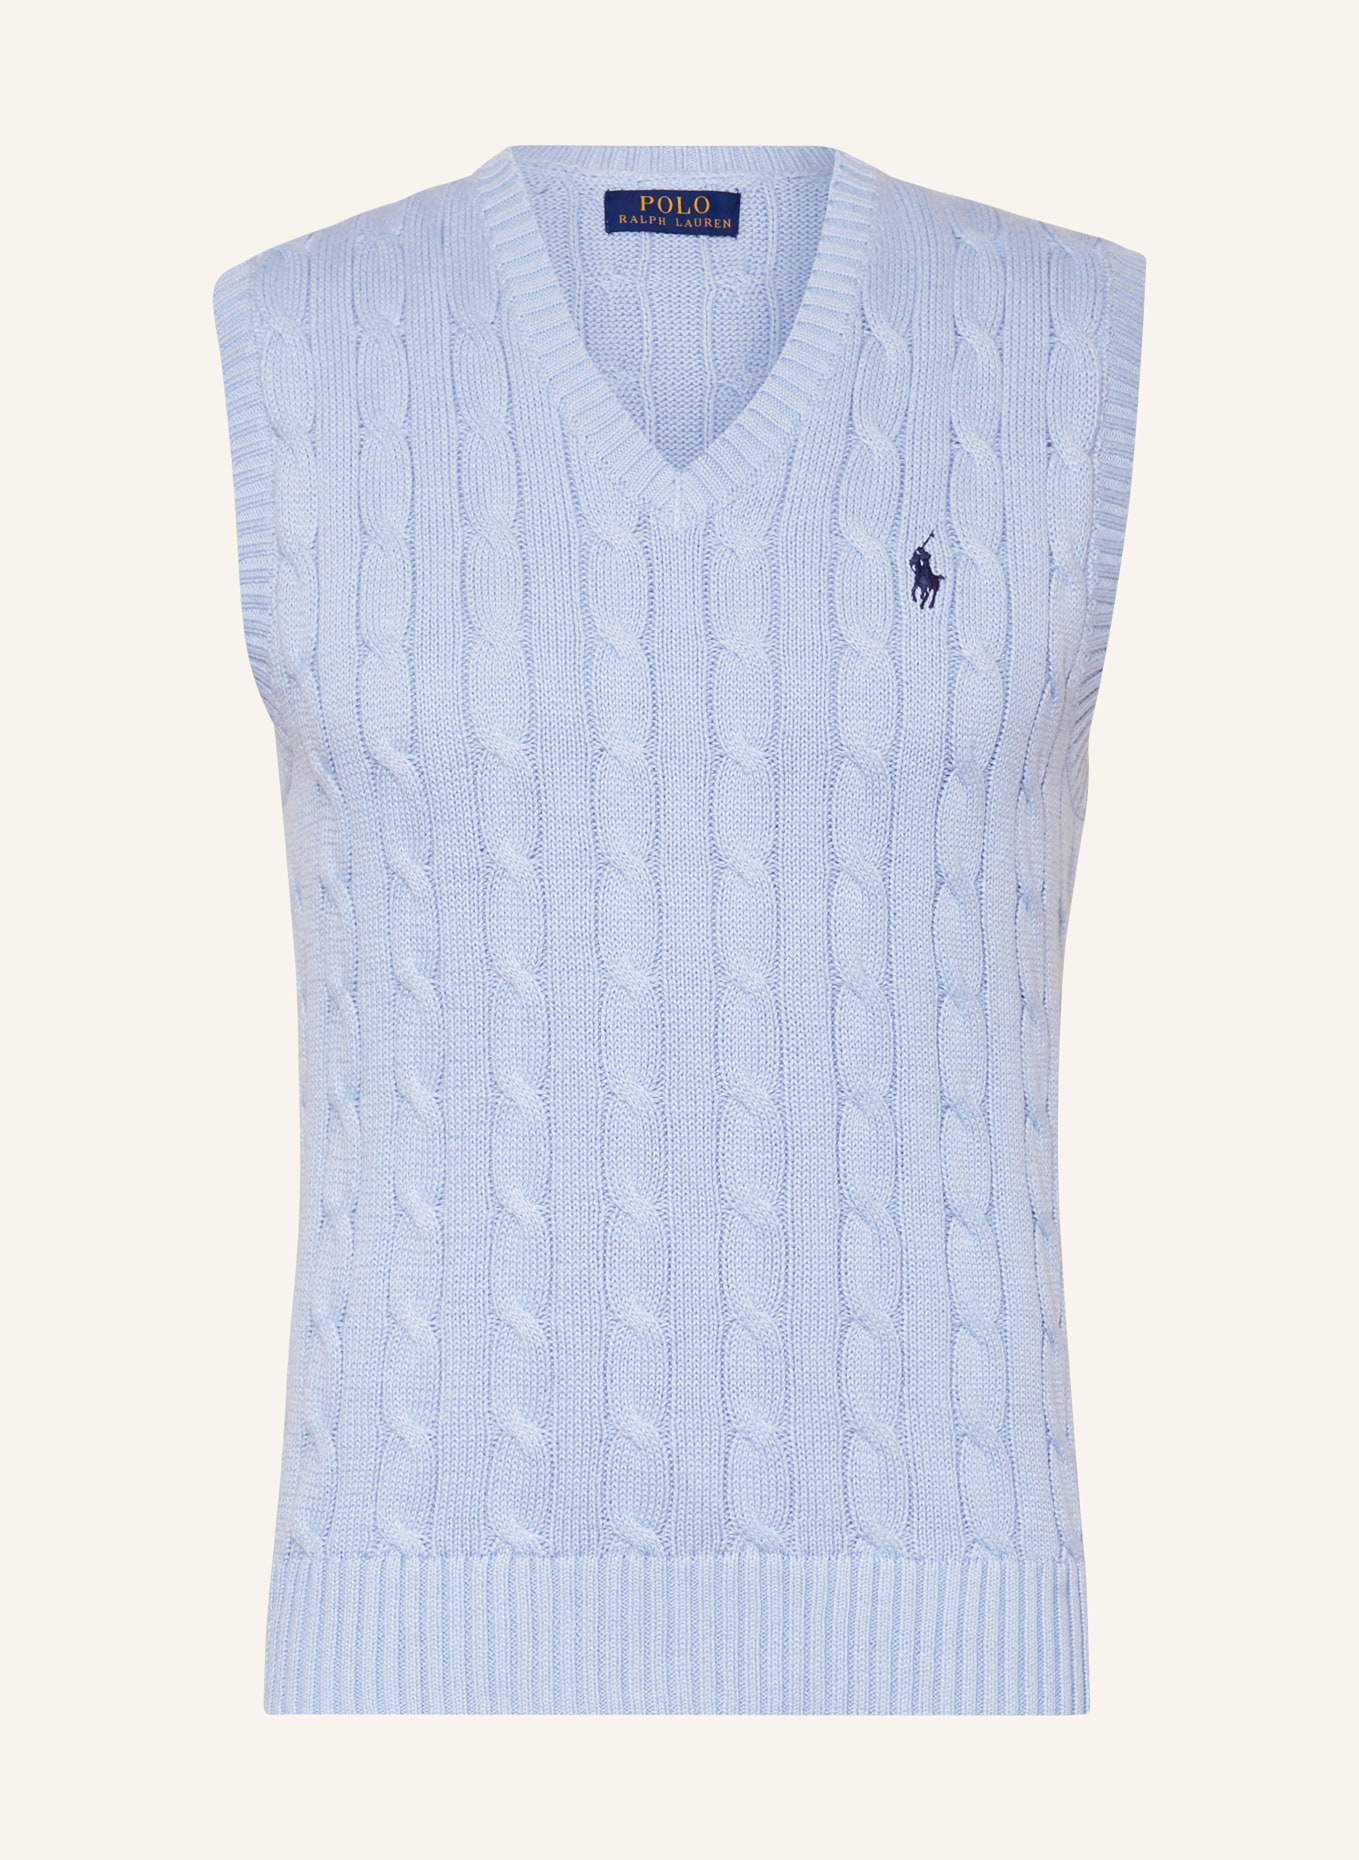 POLO RALPH LAUREN Sweater vest, Color: LIGHT BLUE (Image 1)